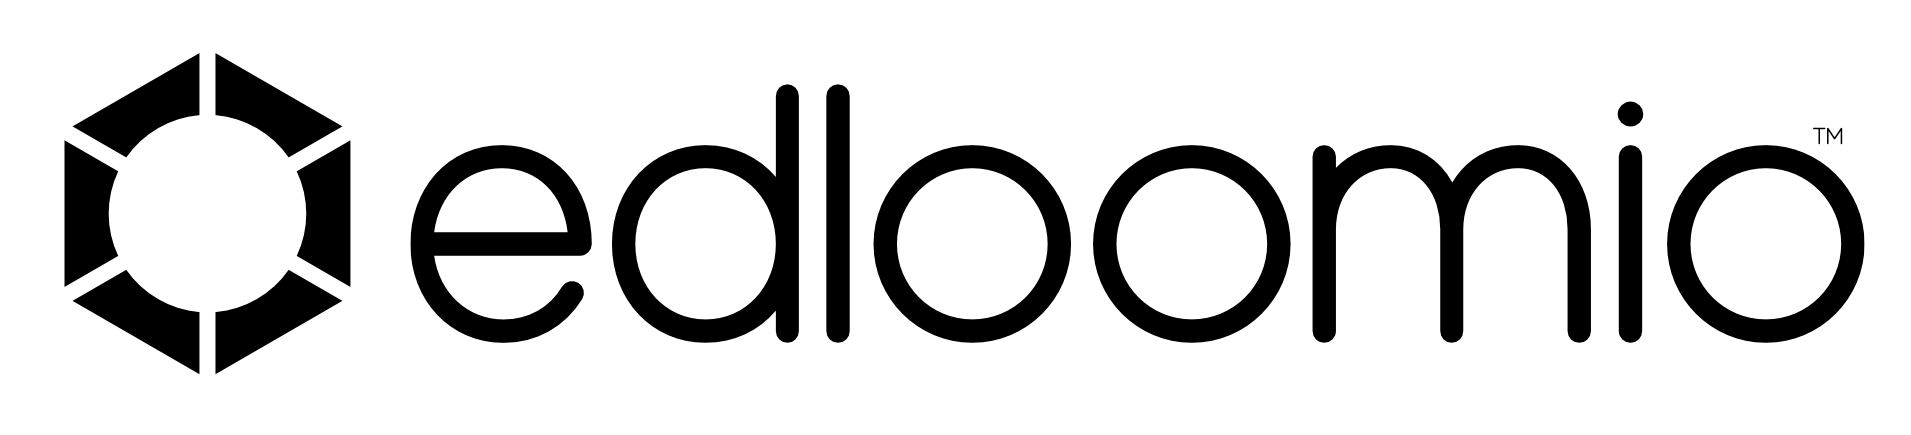 Edloomio Logo 2024 Transp Black V2